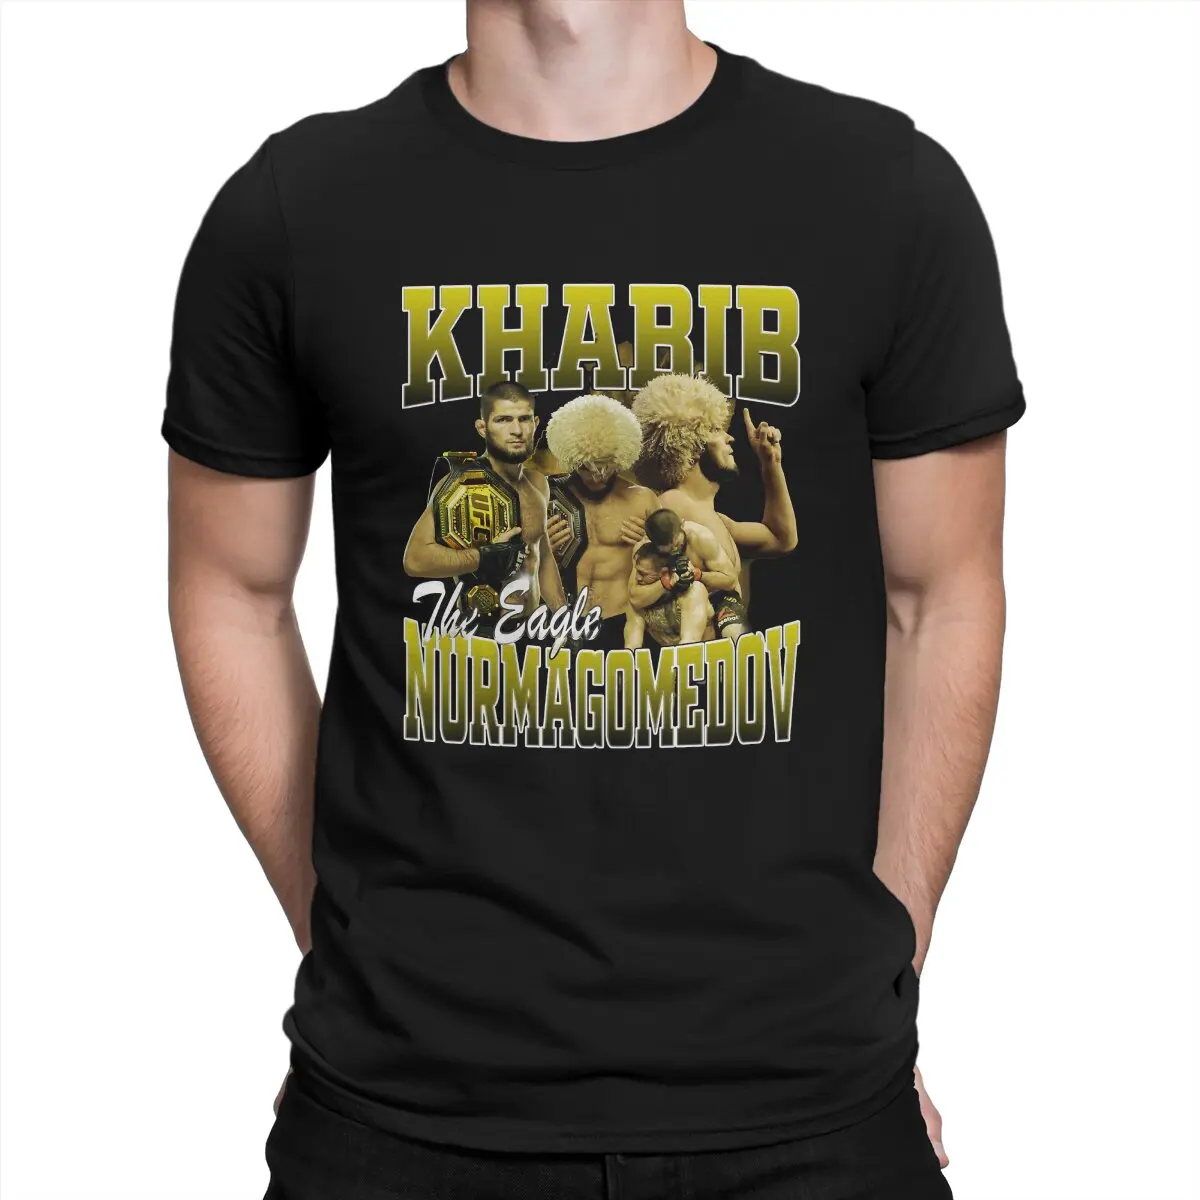 

Khabib Nurmagomedov креативная футболка для мужчин, базовая футболка с круглым вырезом, персонализированные подарки на день рождения, уличная одежда